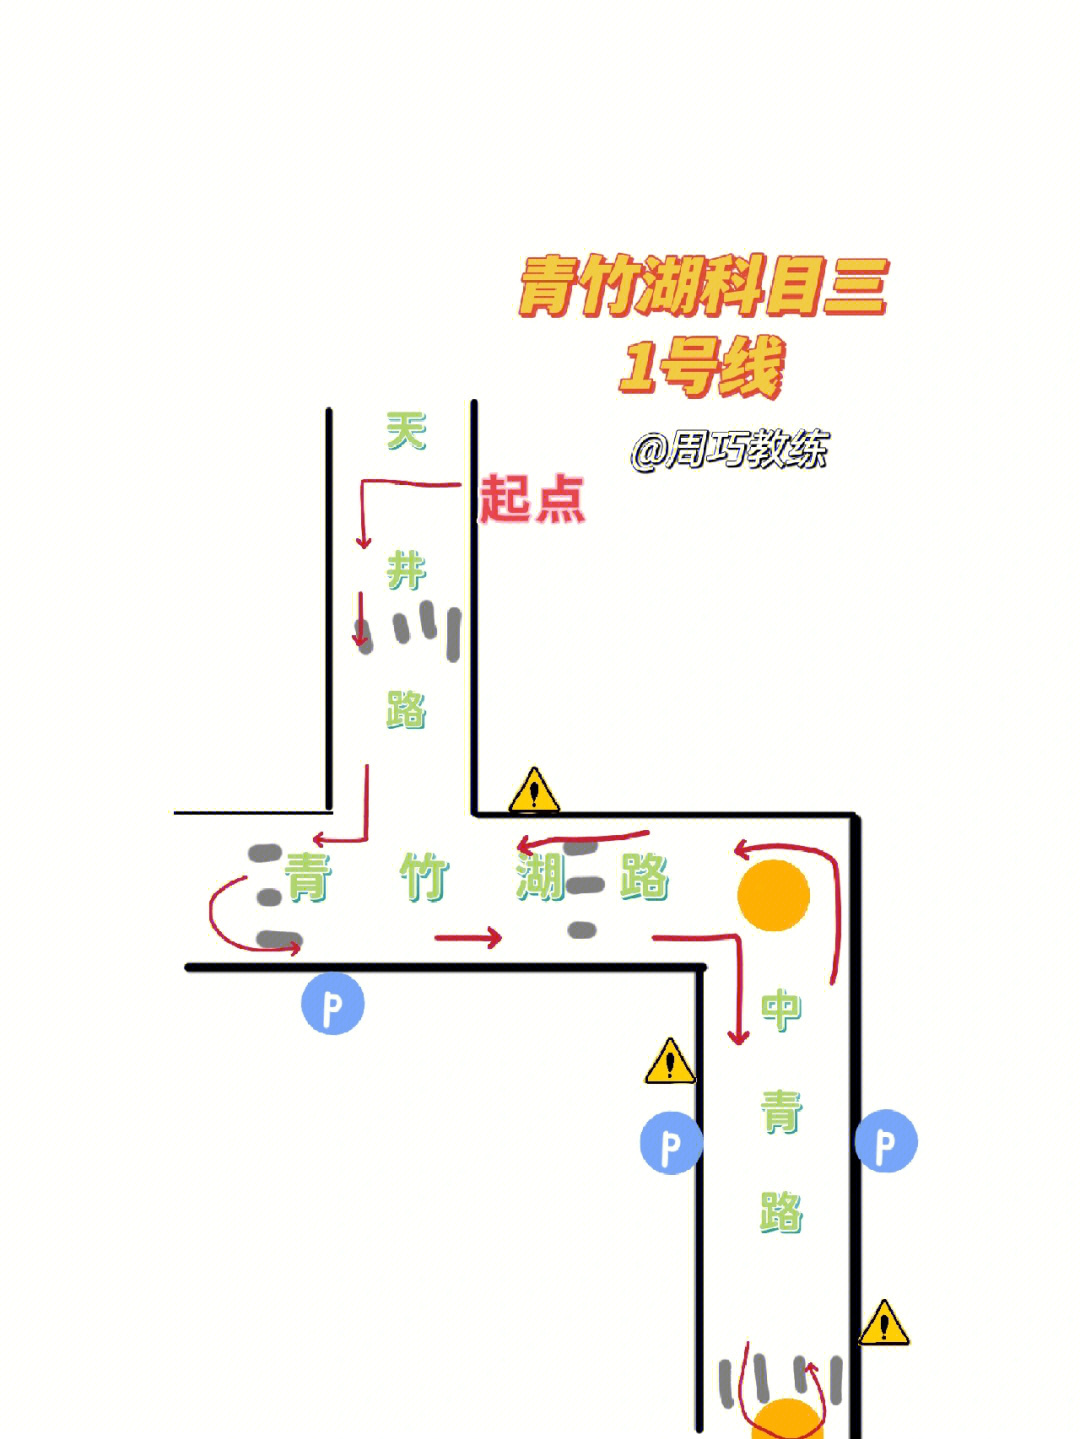 长江科目三考试路线图图片